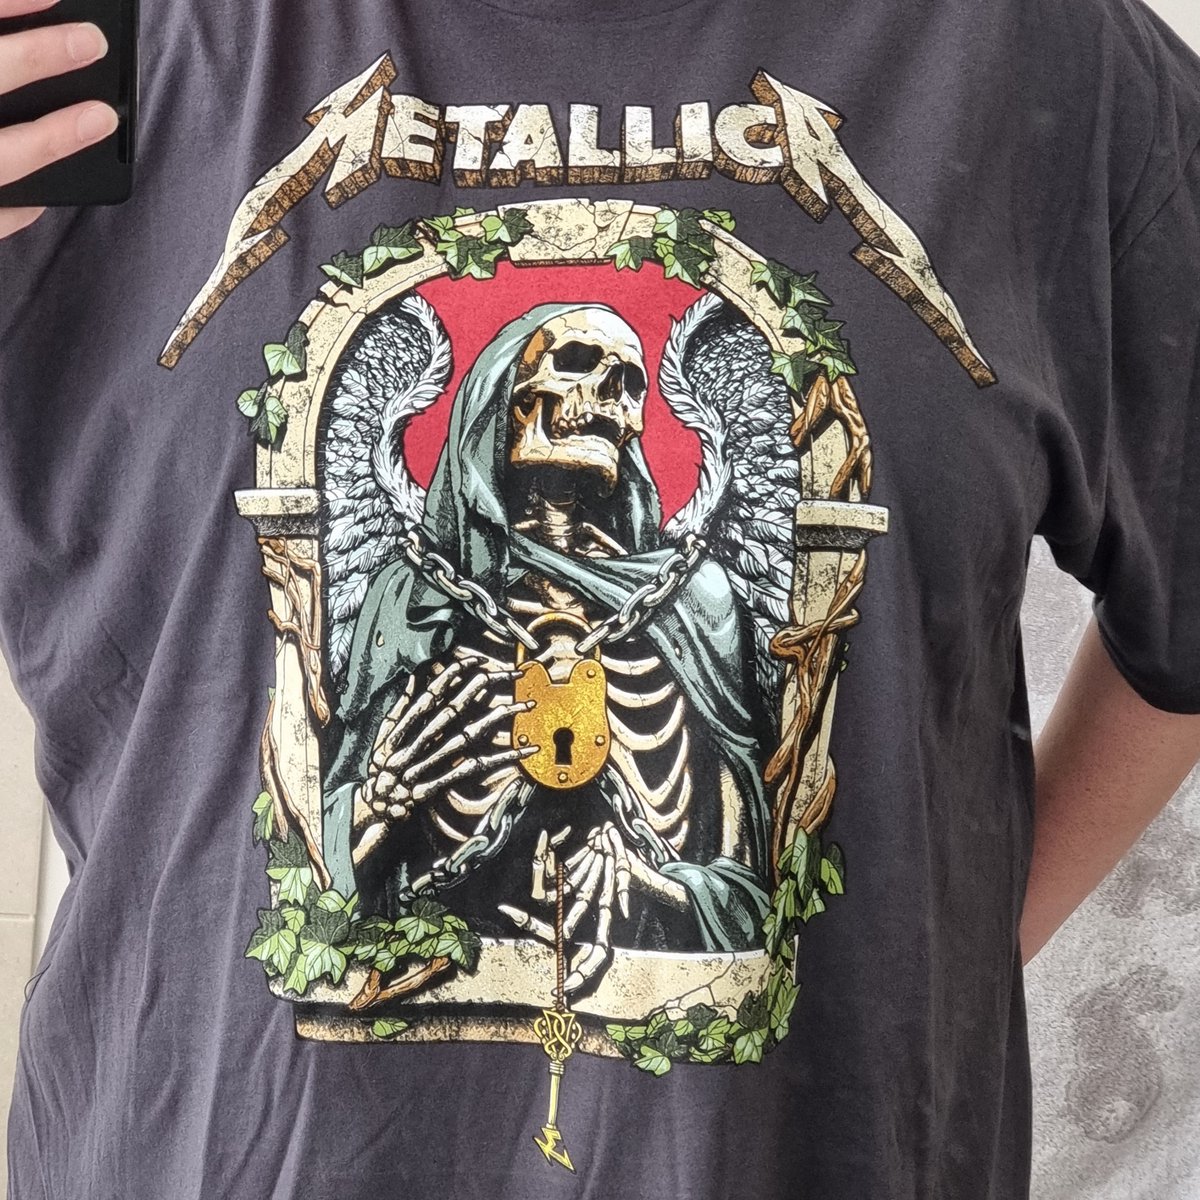 Loving my new @Metallica T-Shirt! The artwork is amazing 😍🤘❤️‍🔥

#MonthsOfGiving2022 
#ChefsForUkraine 
#Metallica